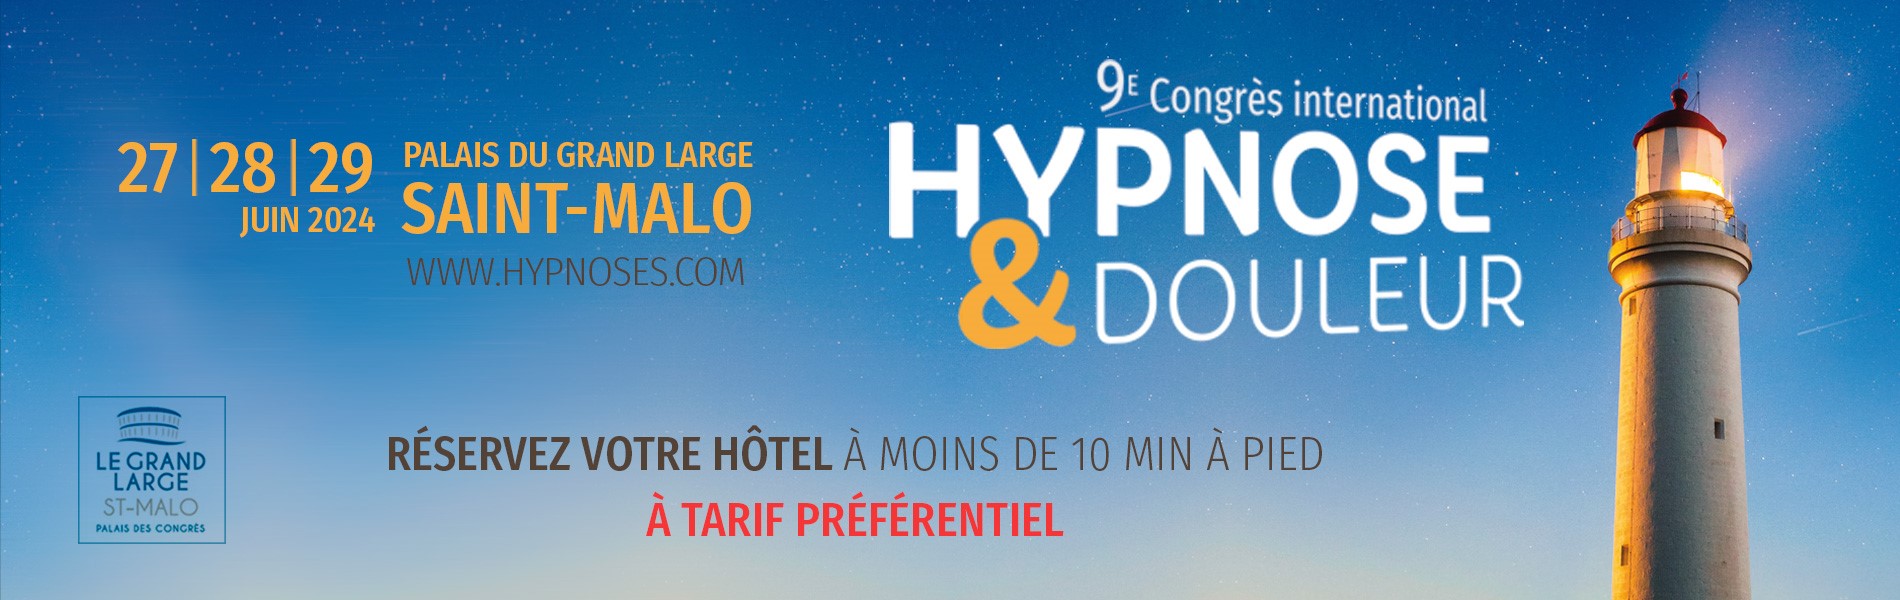 Hypnose & Douleur - Réservez un hôtel  à St Malo